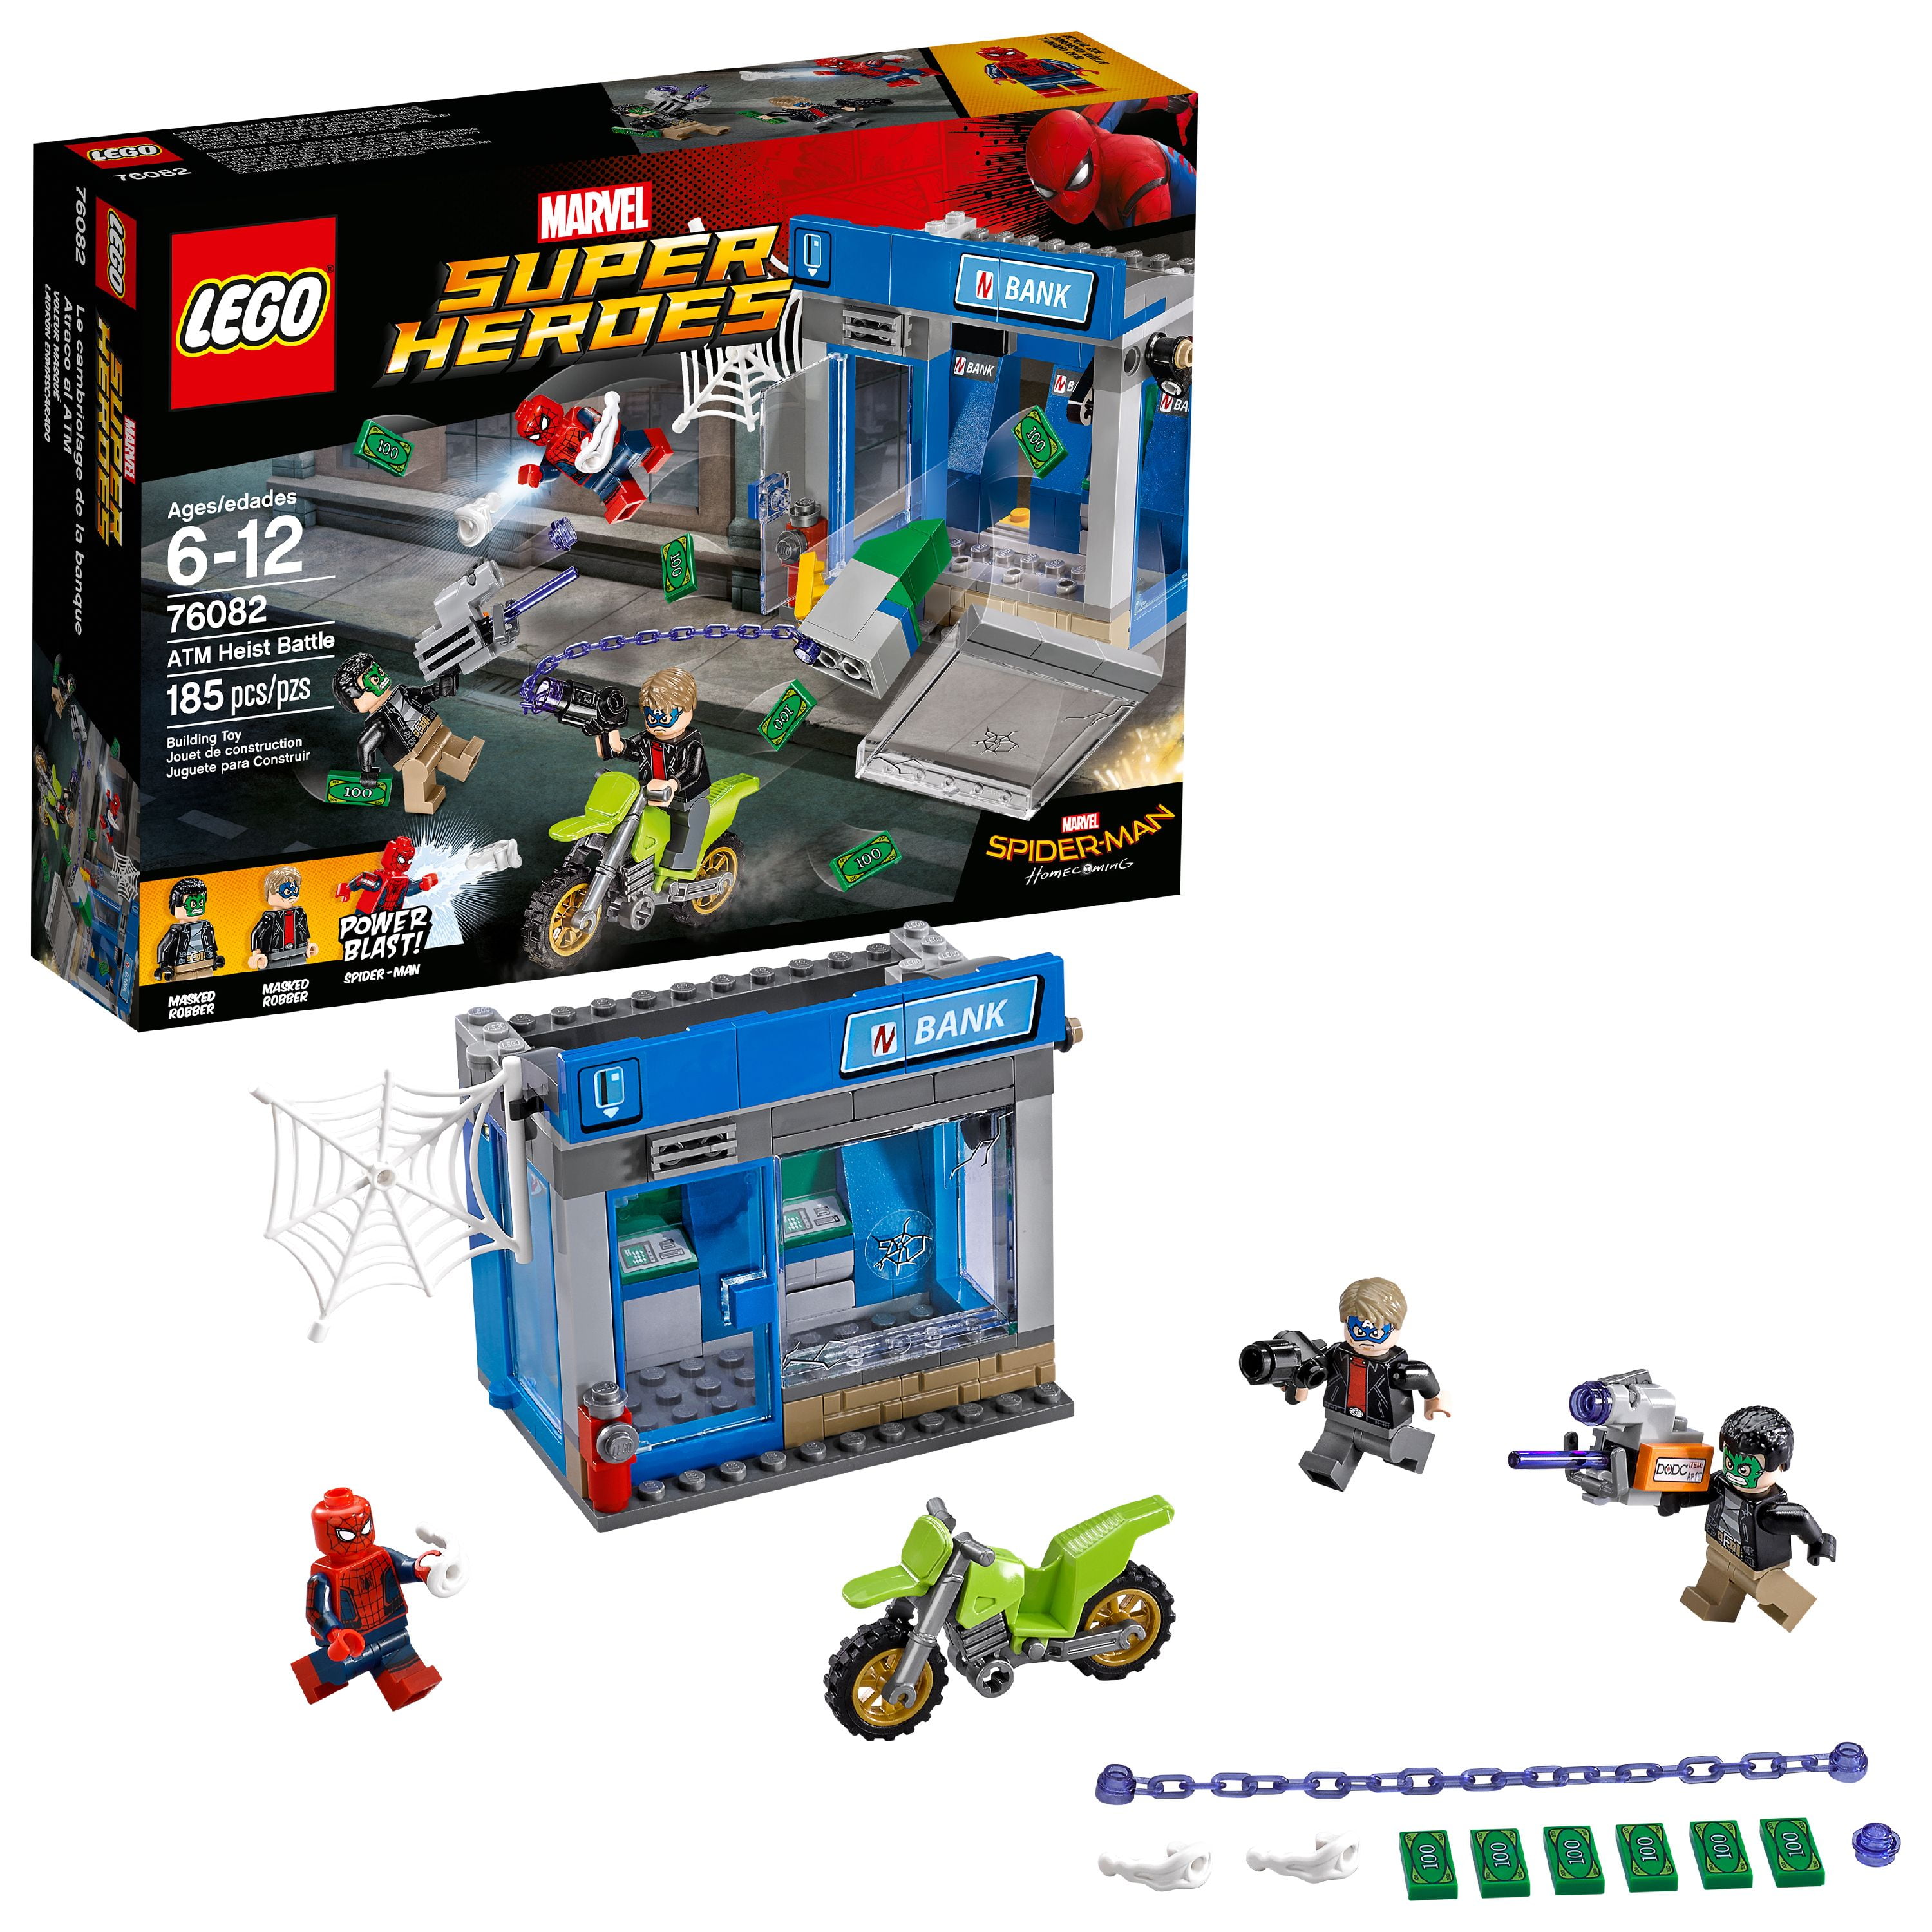 76082 LEGO Marvel Super Heroes ATM Heist Battle 2017 for sale online